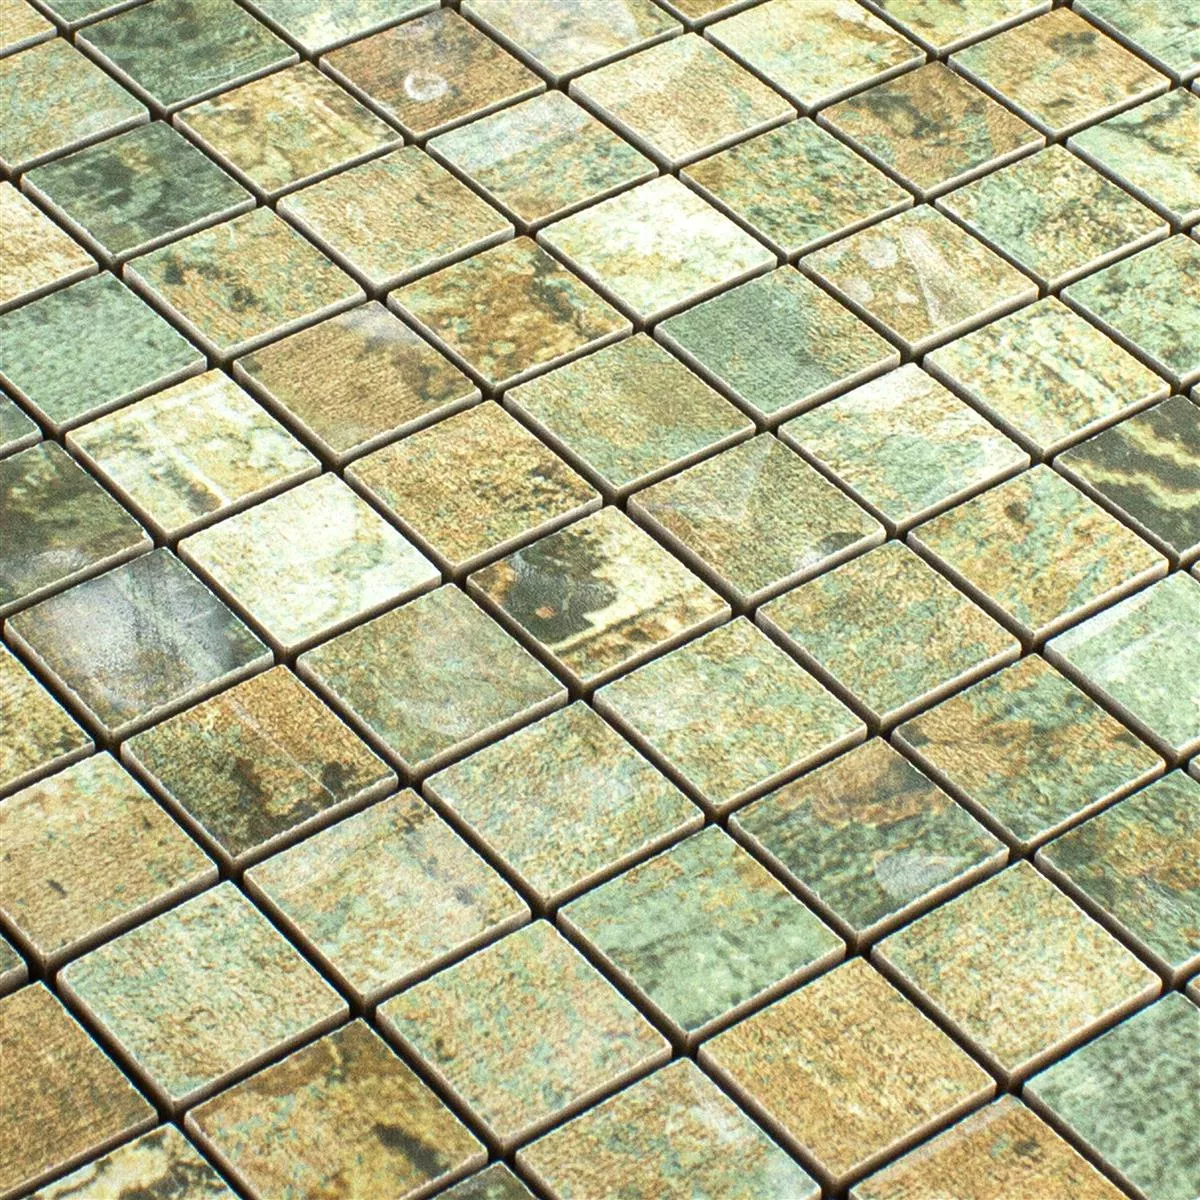 Sample Ceramic Mosaic Tiles Moonlight Brown Green